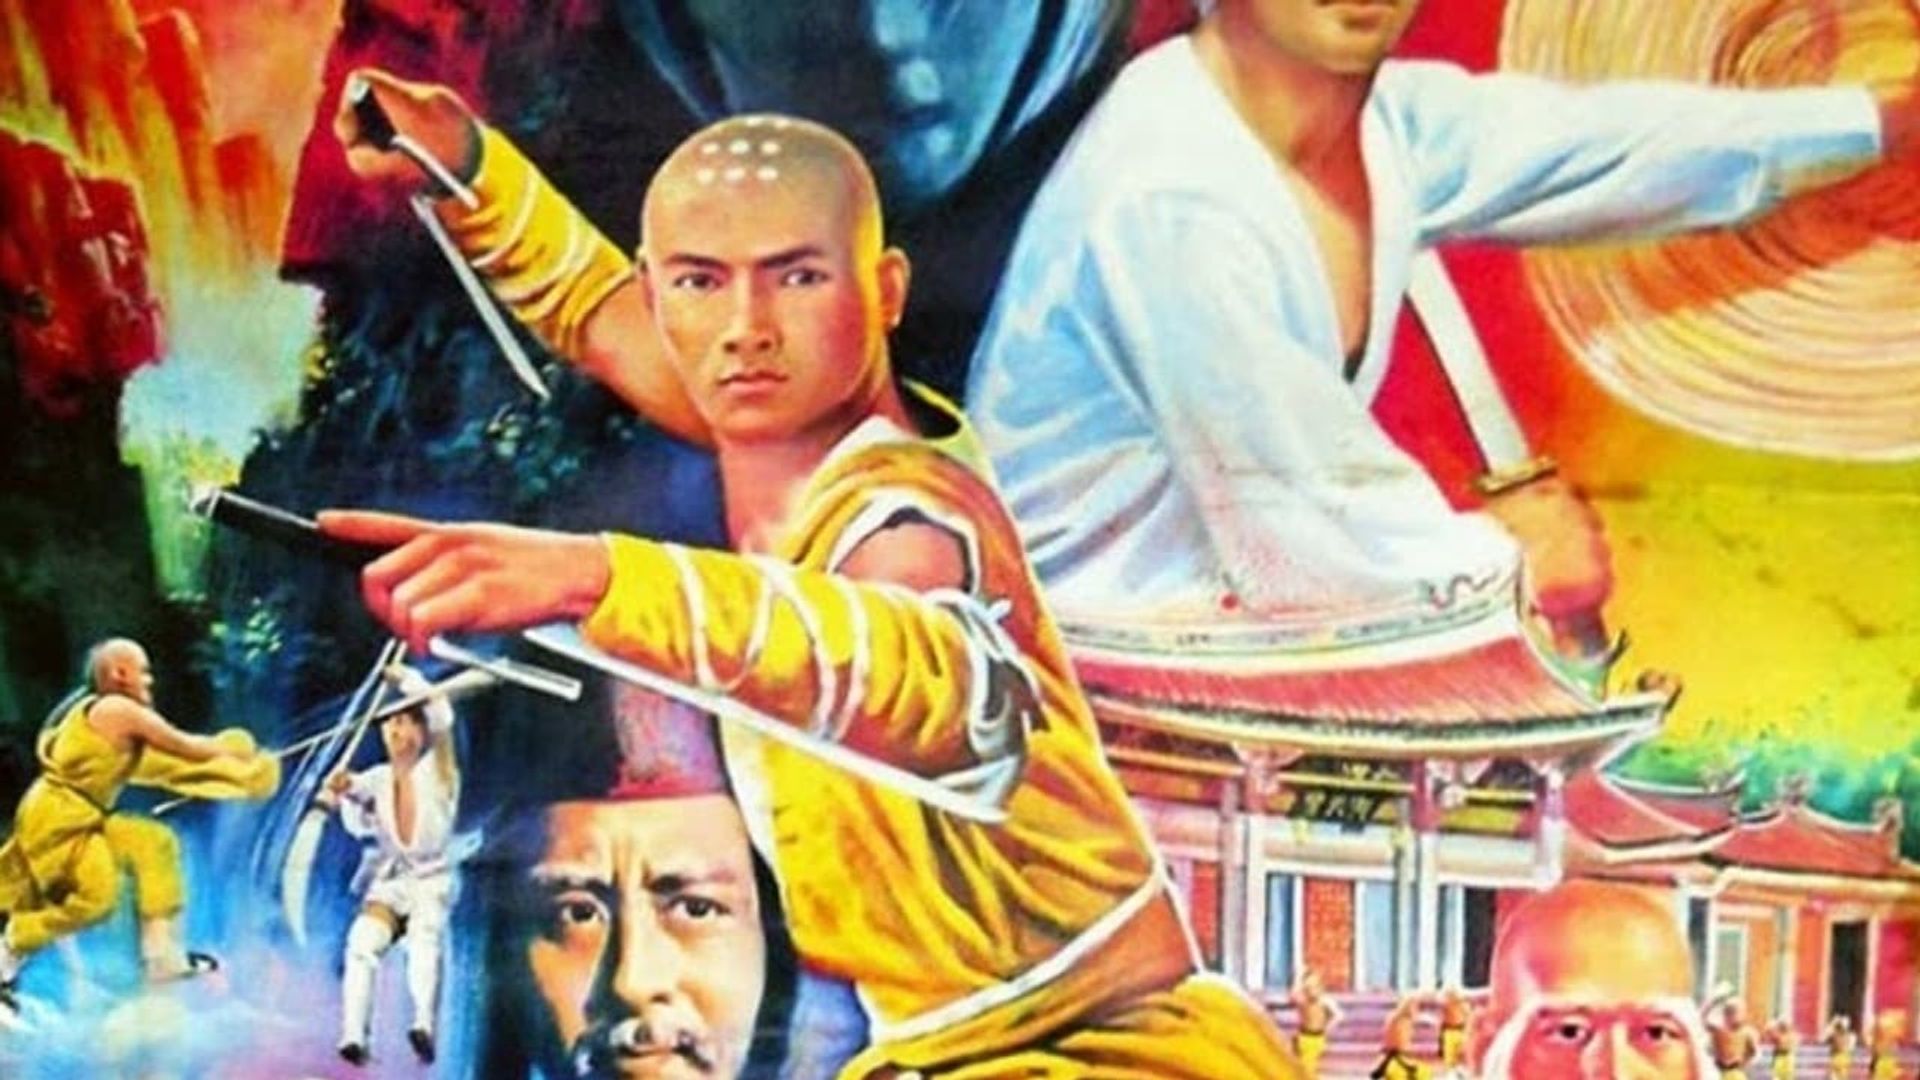 Ninja vs. Shaolin background